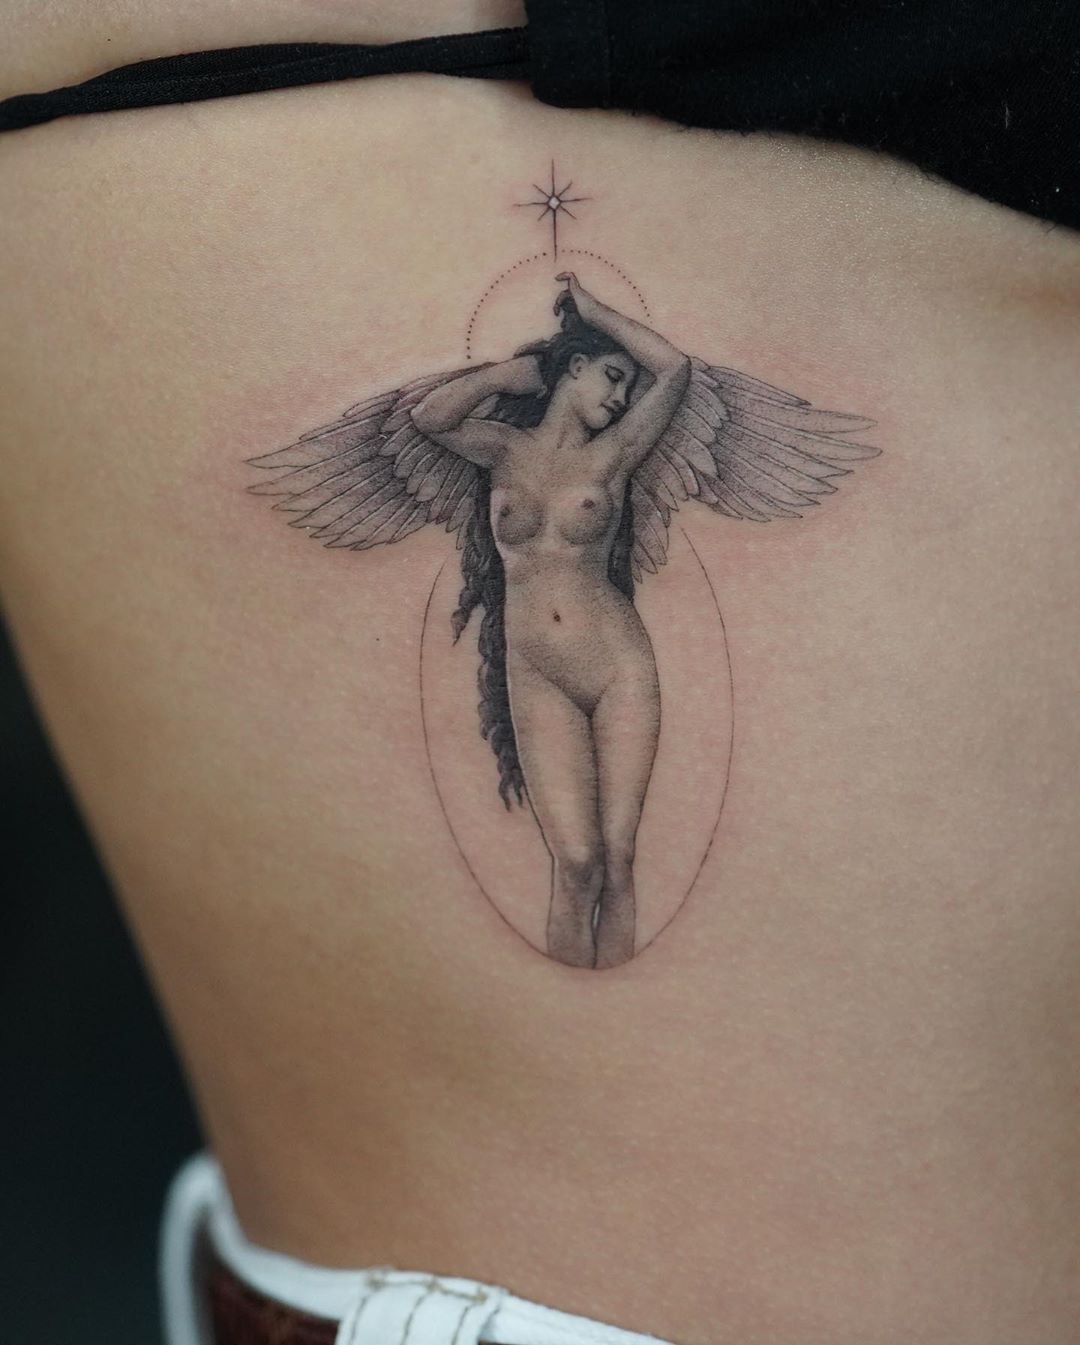 Vanessa Hudgens â€“ New tattoo and instagram medias